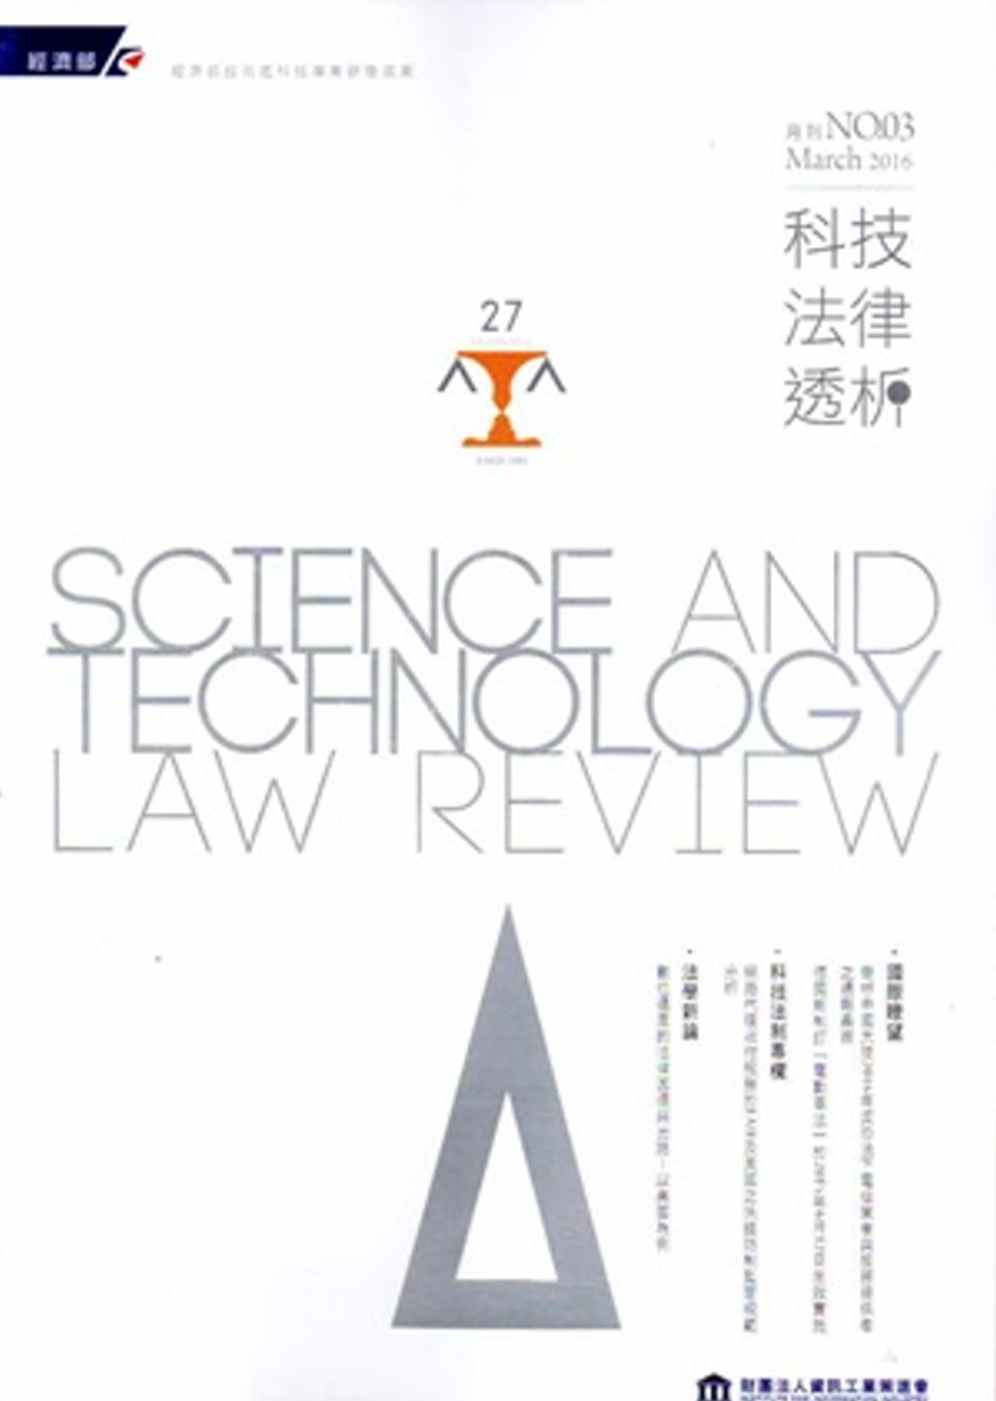 科技法律透析月刊第28卷第03期(105.03)